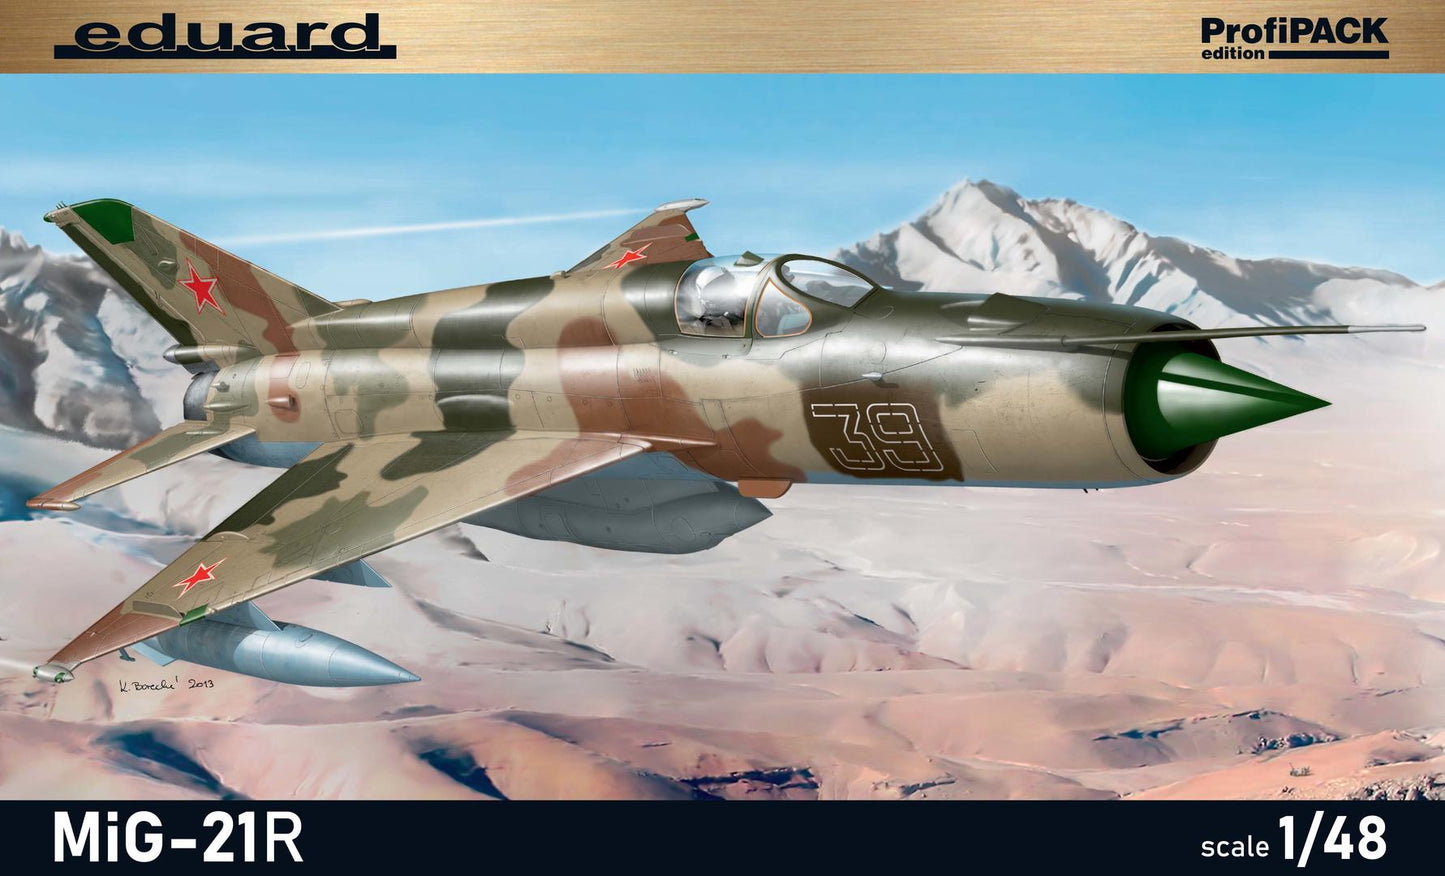 Mikoyan MiG-21R - ProfiPack Edition - EDUARD 1/48